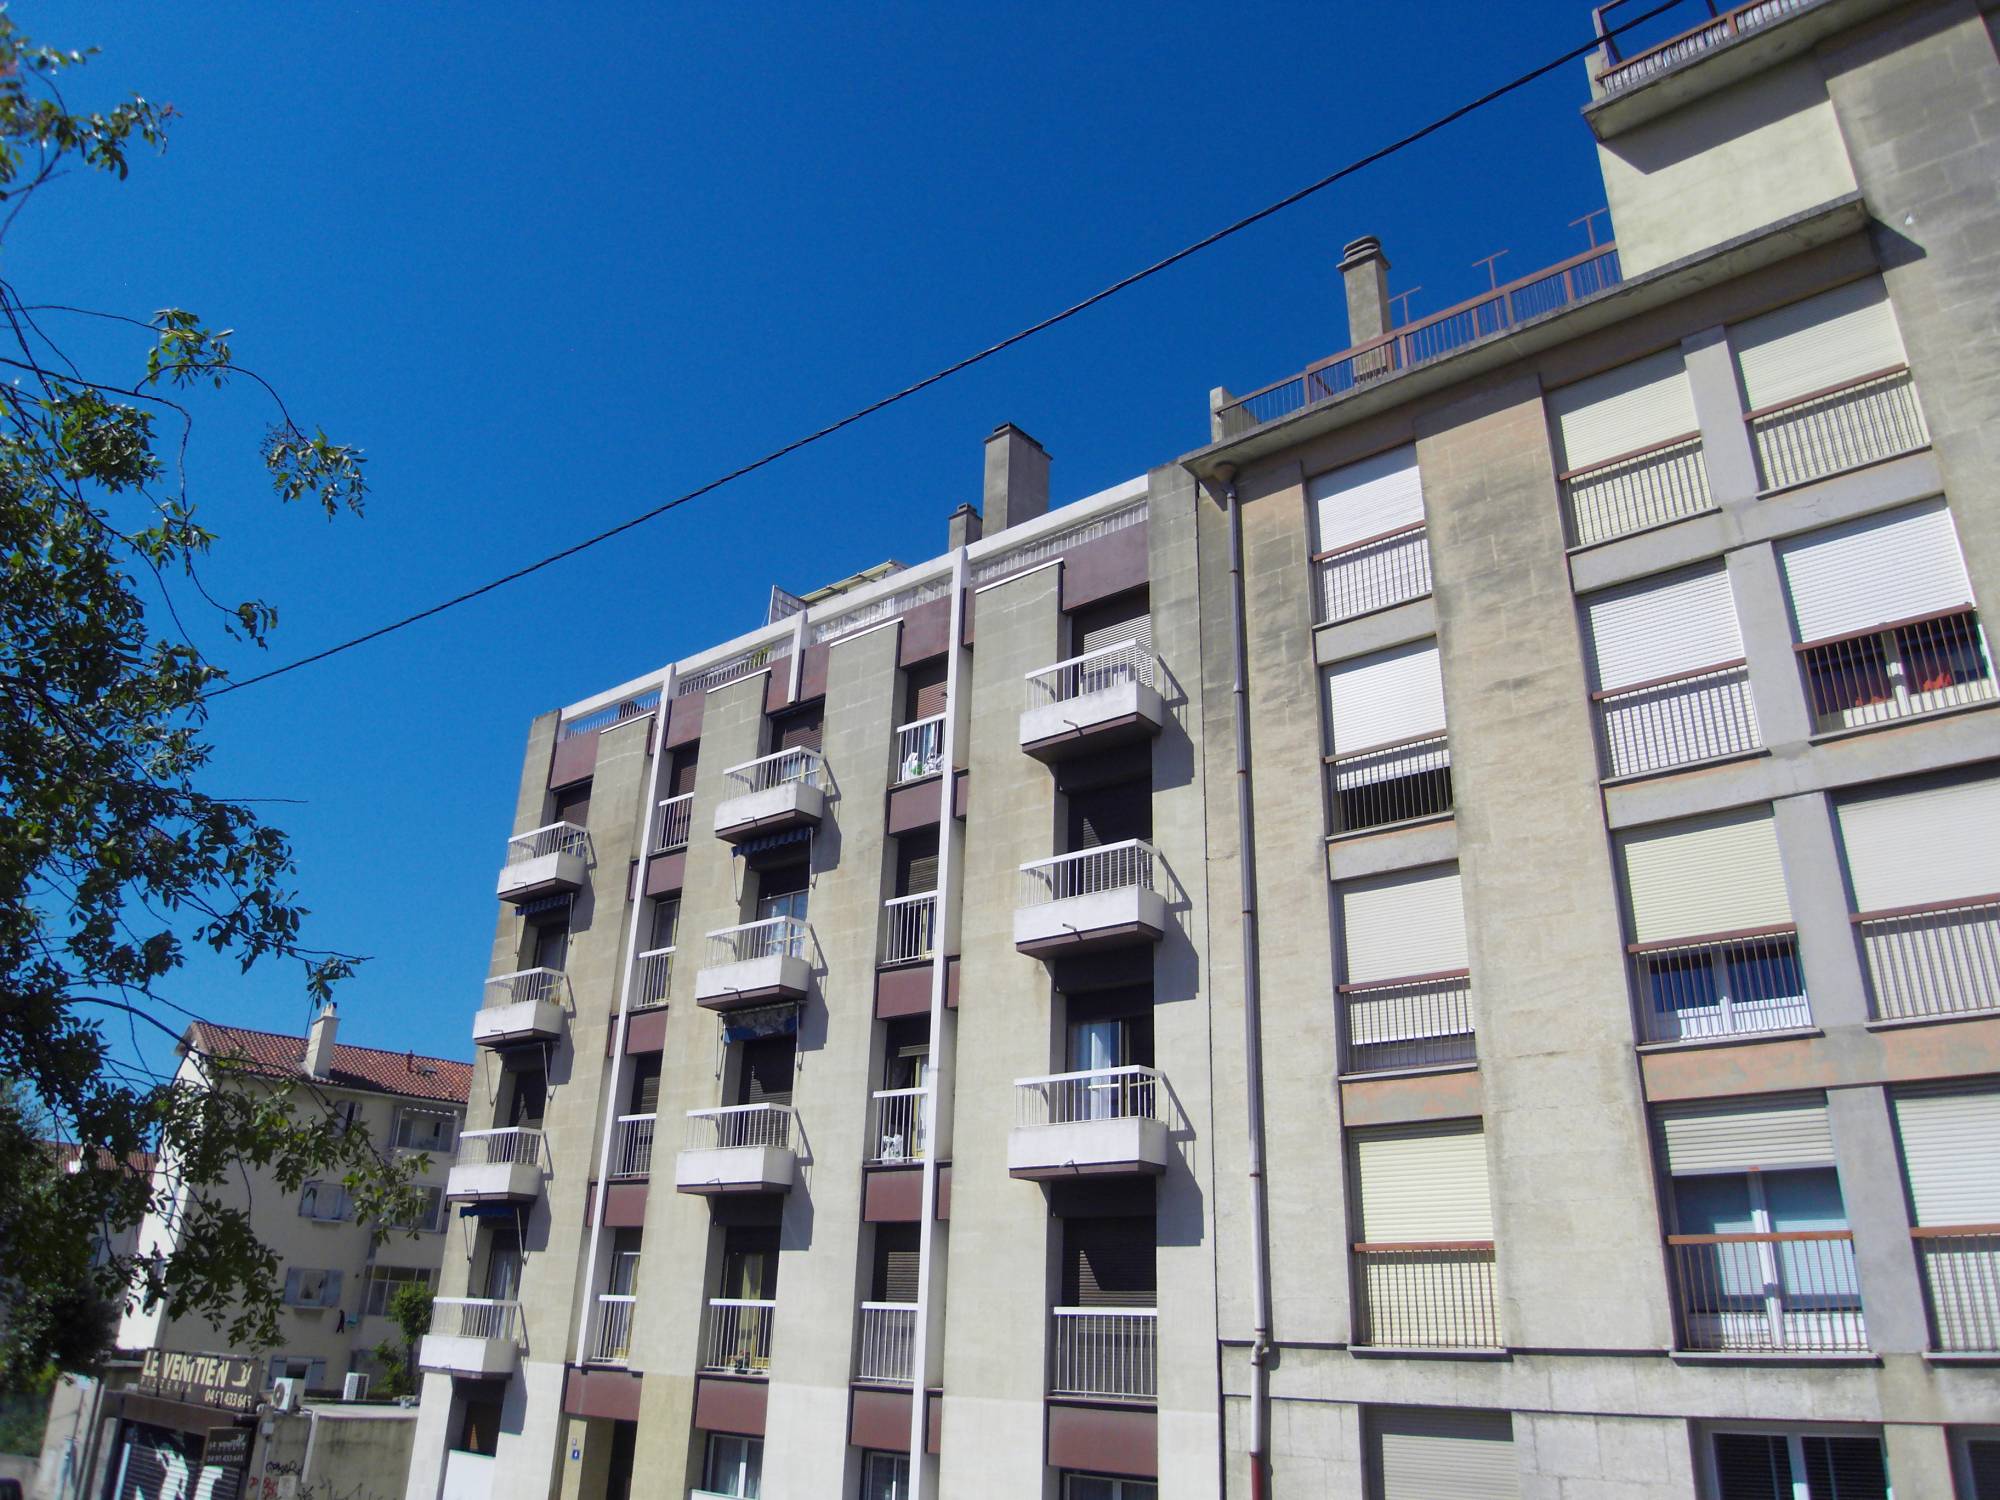 A vendre logement occupé type 4 90 m² avec terrasse et cave La Blancarde  13004 Marseille